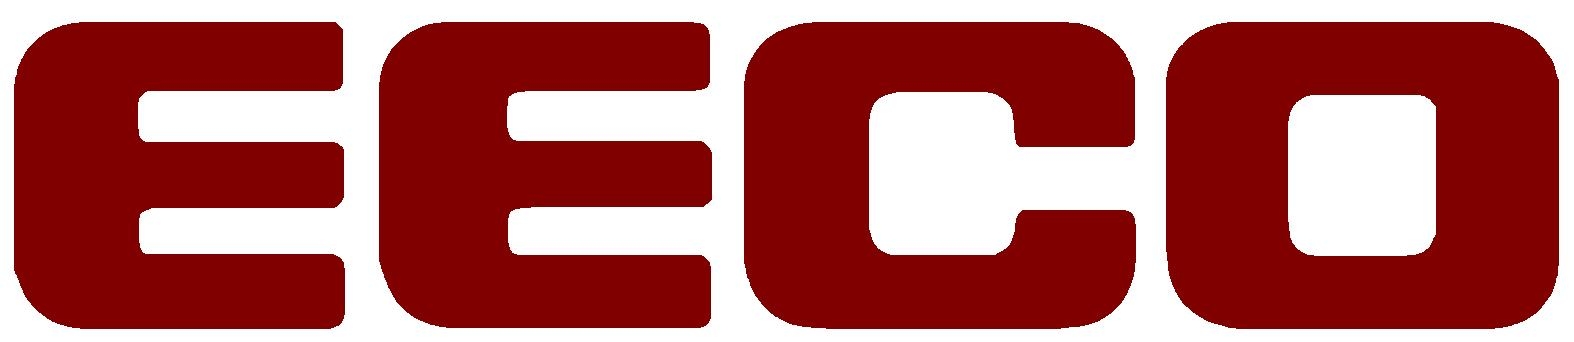 EECO Switch